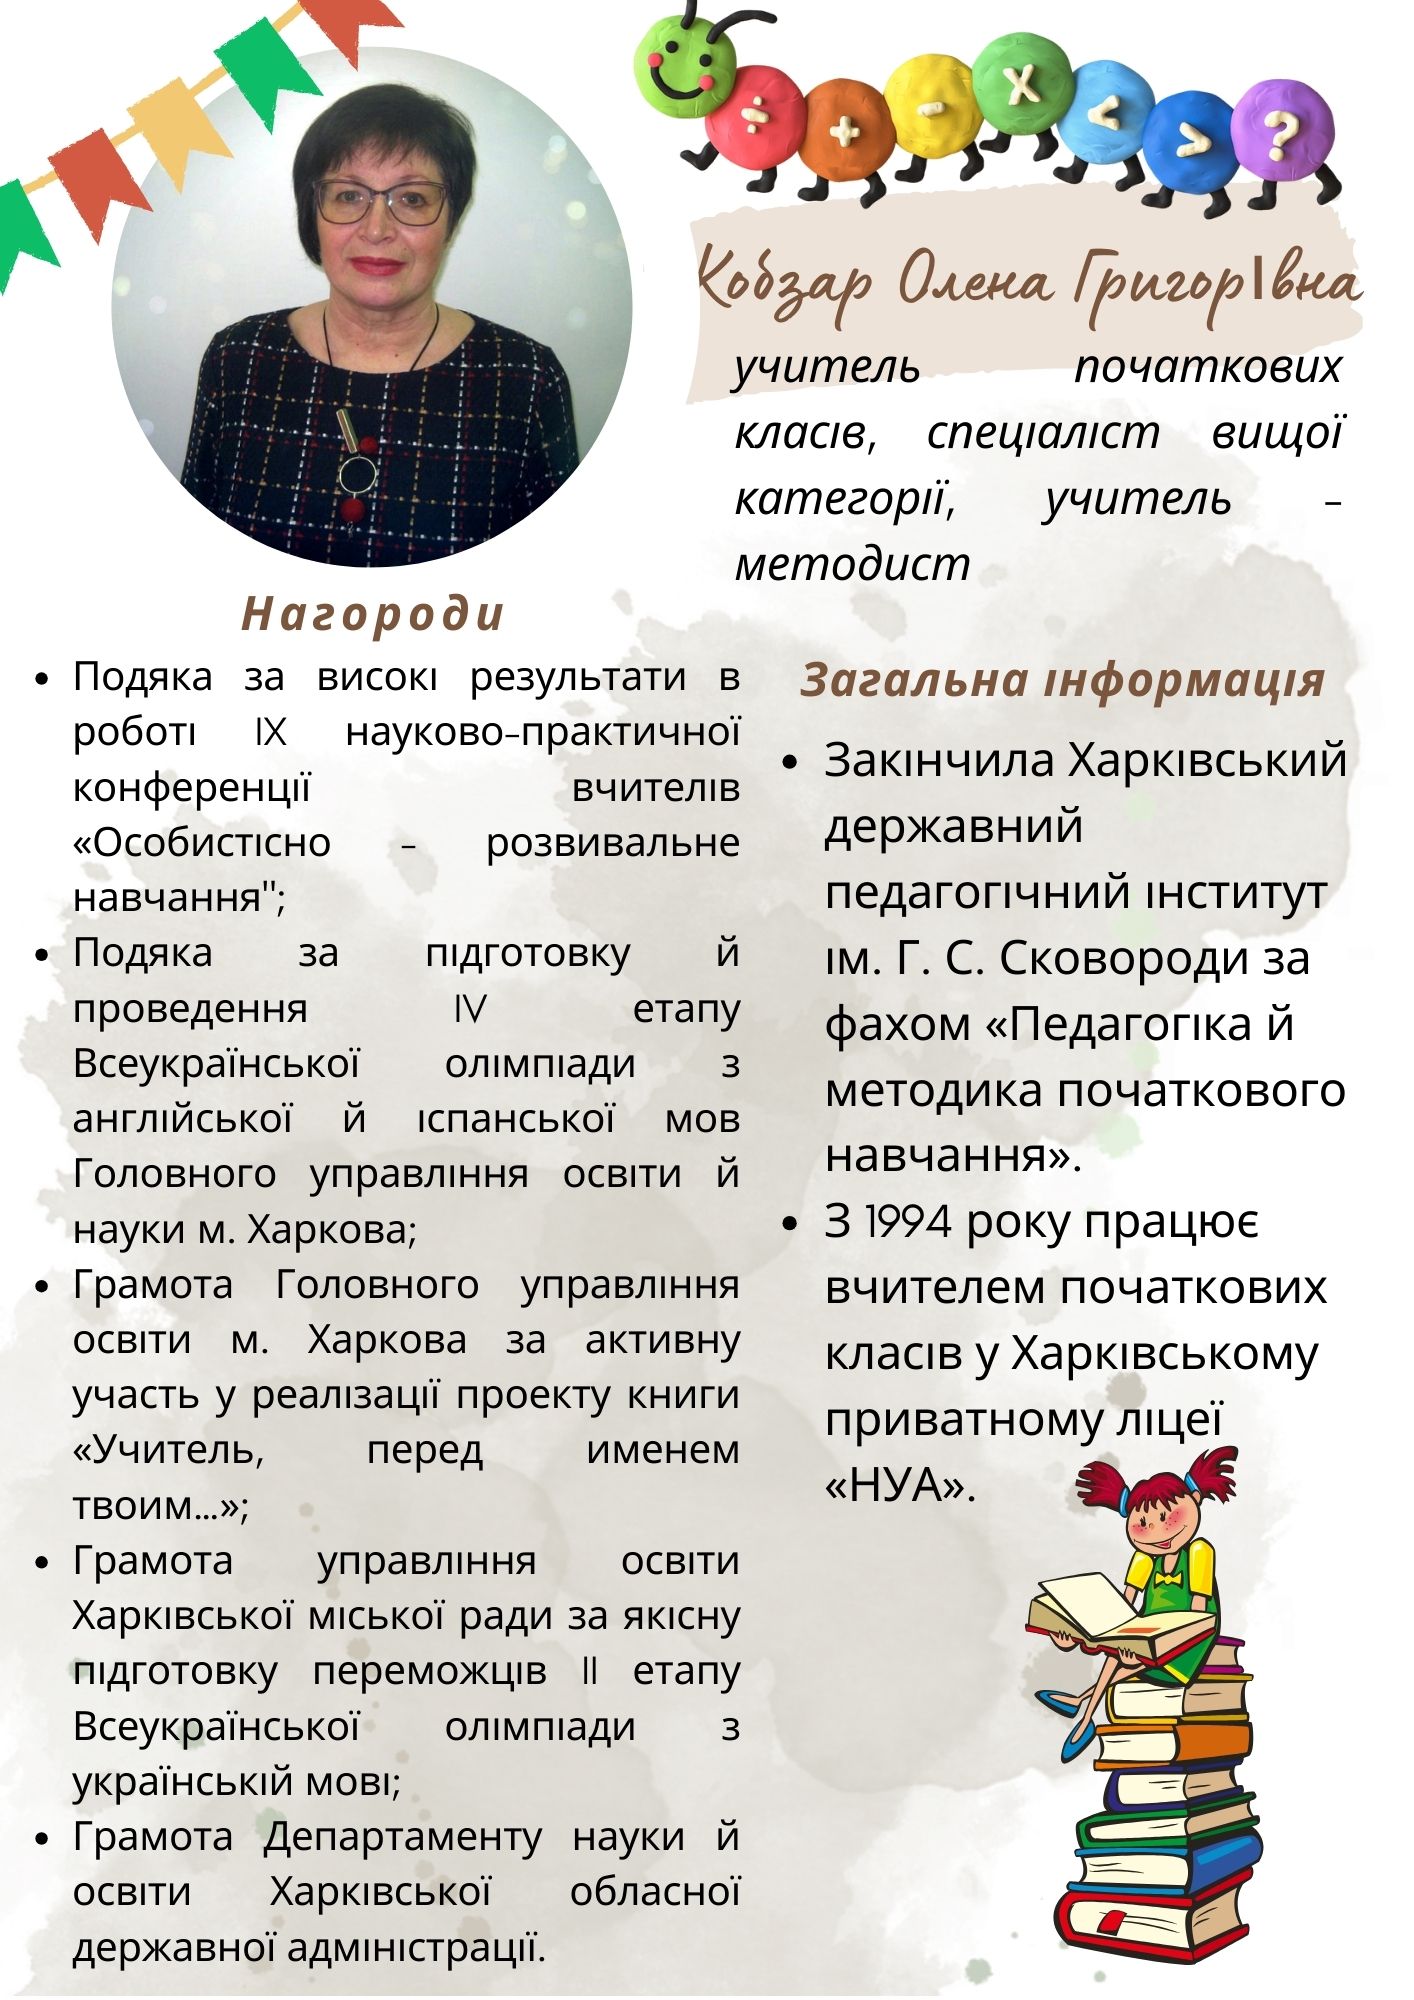 Кобзар Олена Григорівна, учитель початкових класів, спеціаліст вищої категорії, учитель - методист